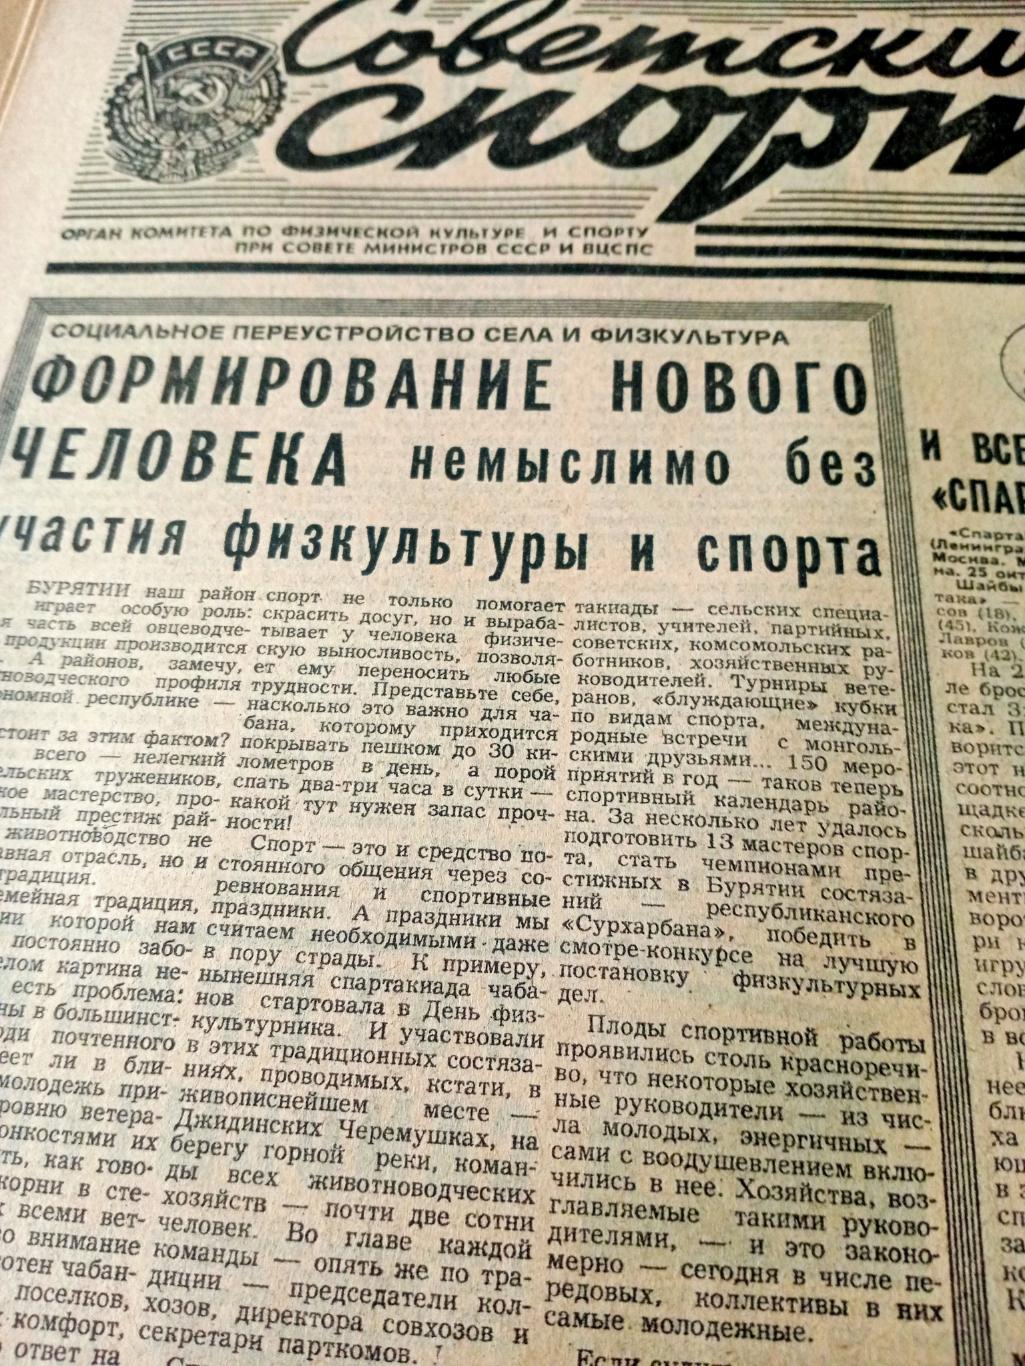 И все-таки Спартак. Советский спорт. 1982 год. 26 октября